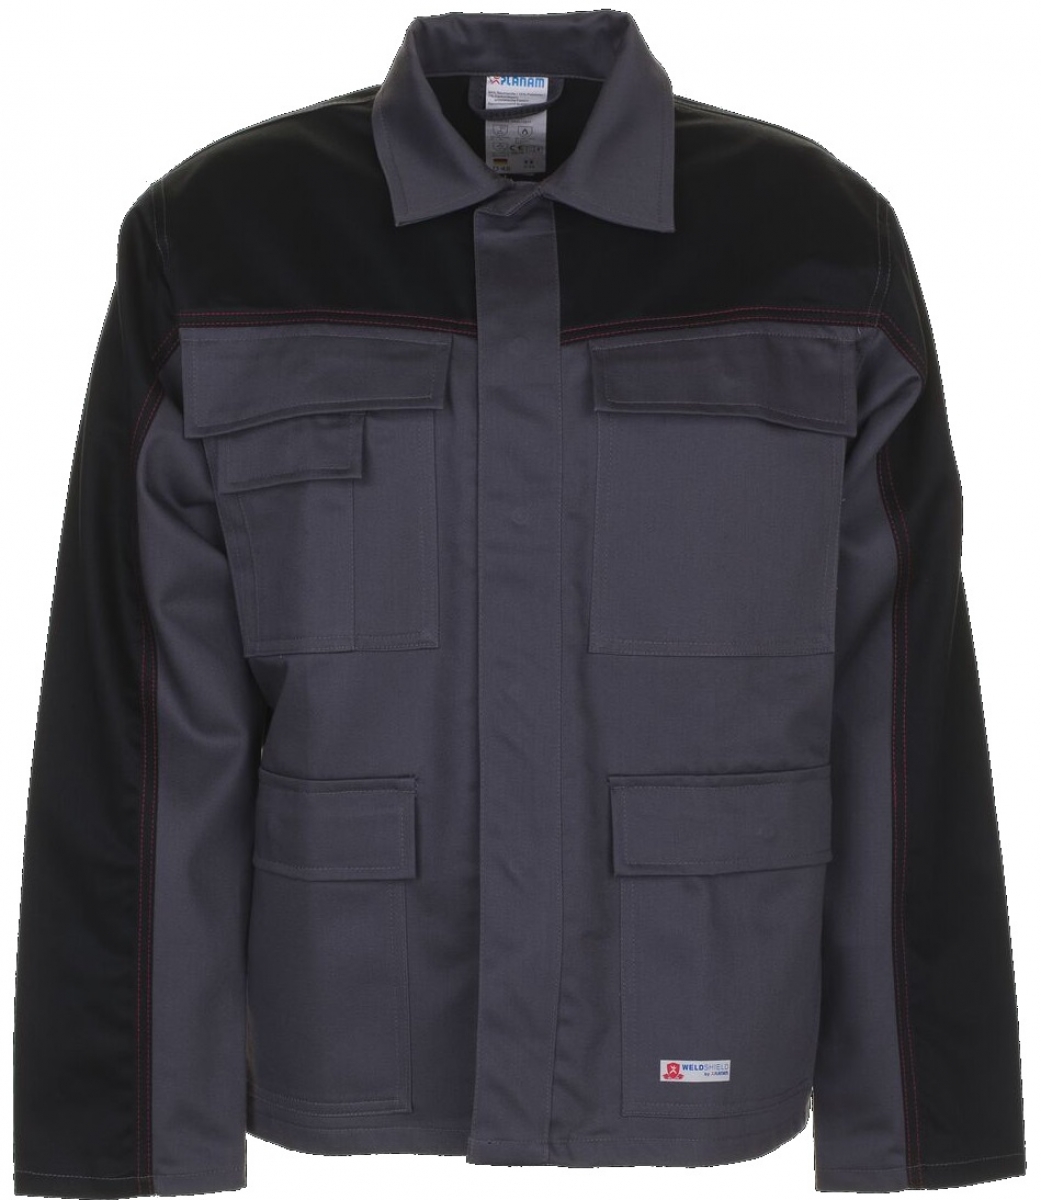 PLANAM-Workwear, Arbeits-Berufs-Bund-Jacke, Weld Shield grau/schwarz